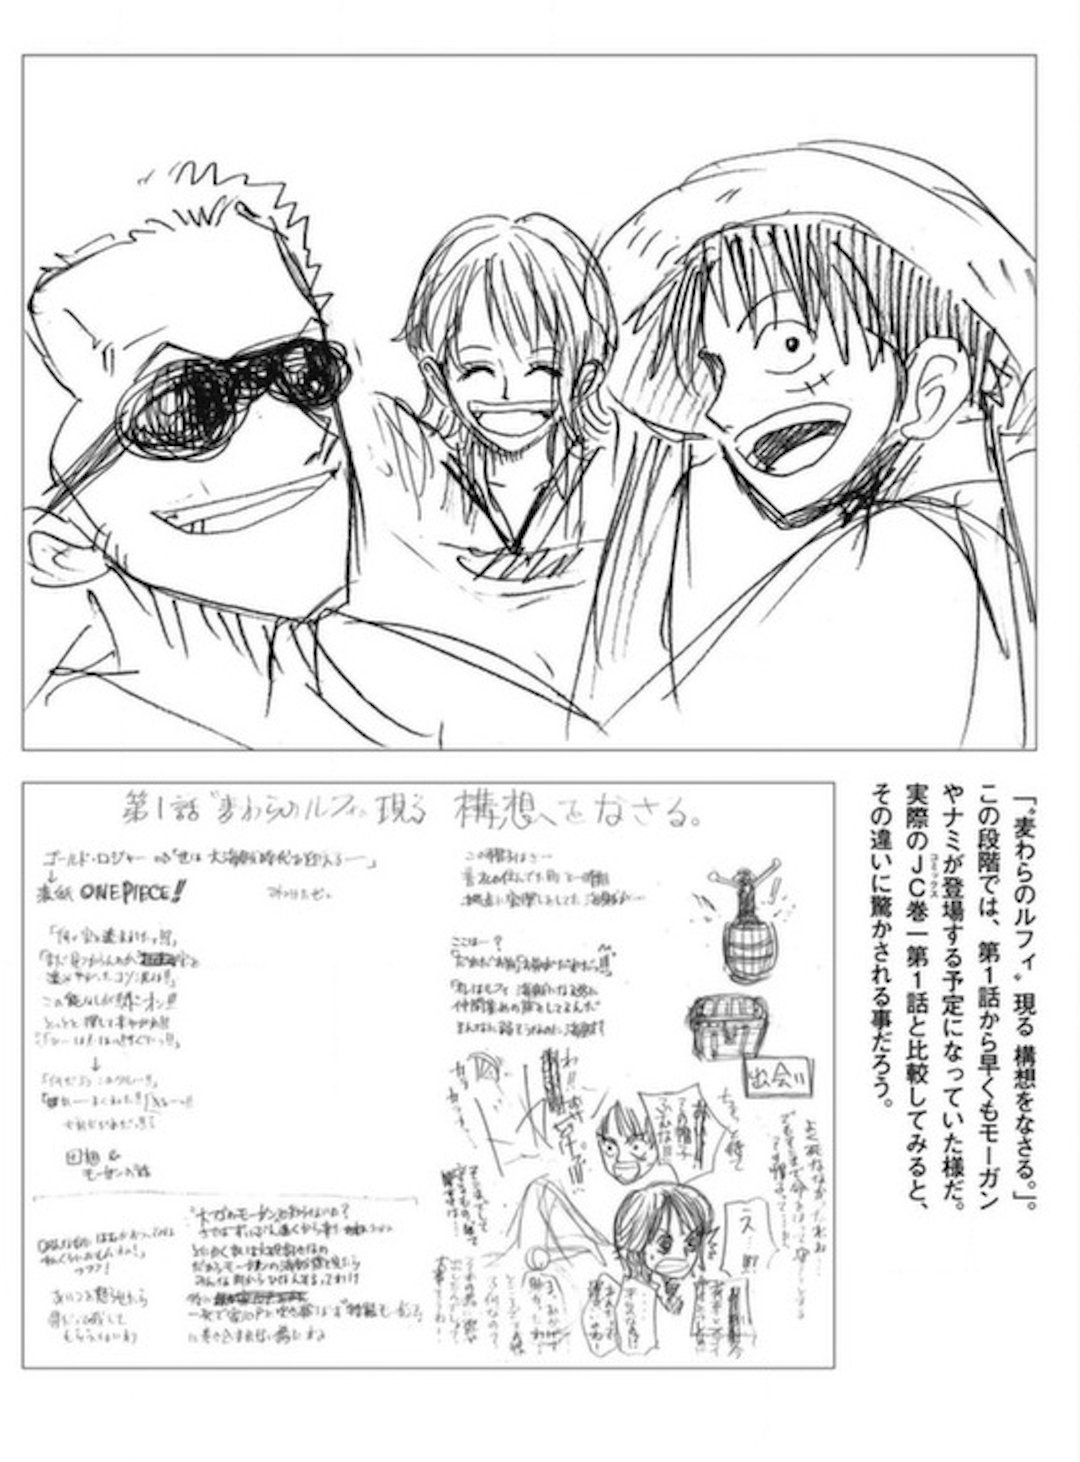 One Piece Magazine Vol 10 16 Of September Page 10 Worstgen